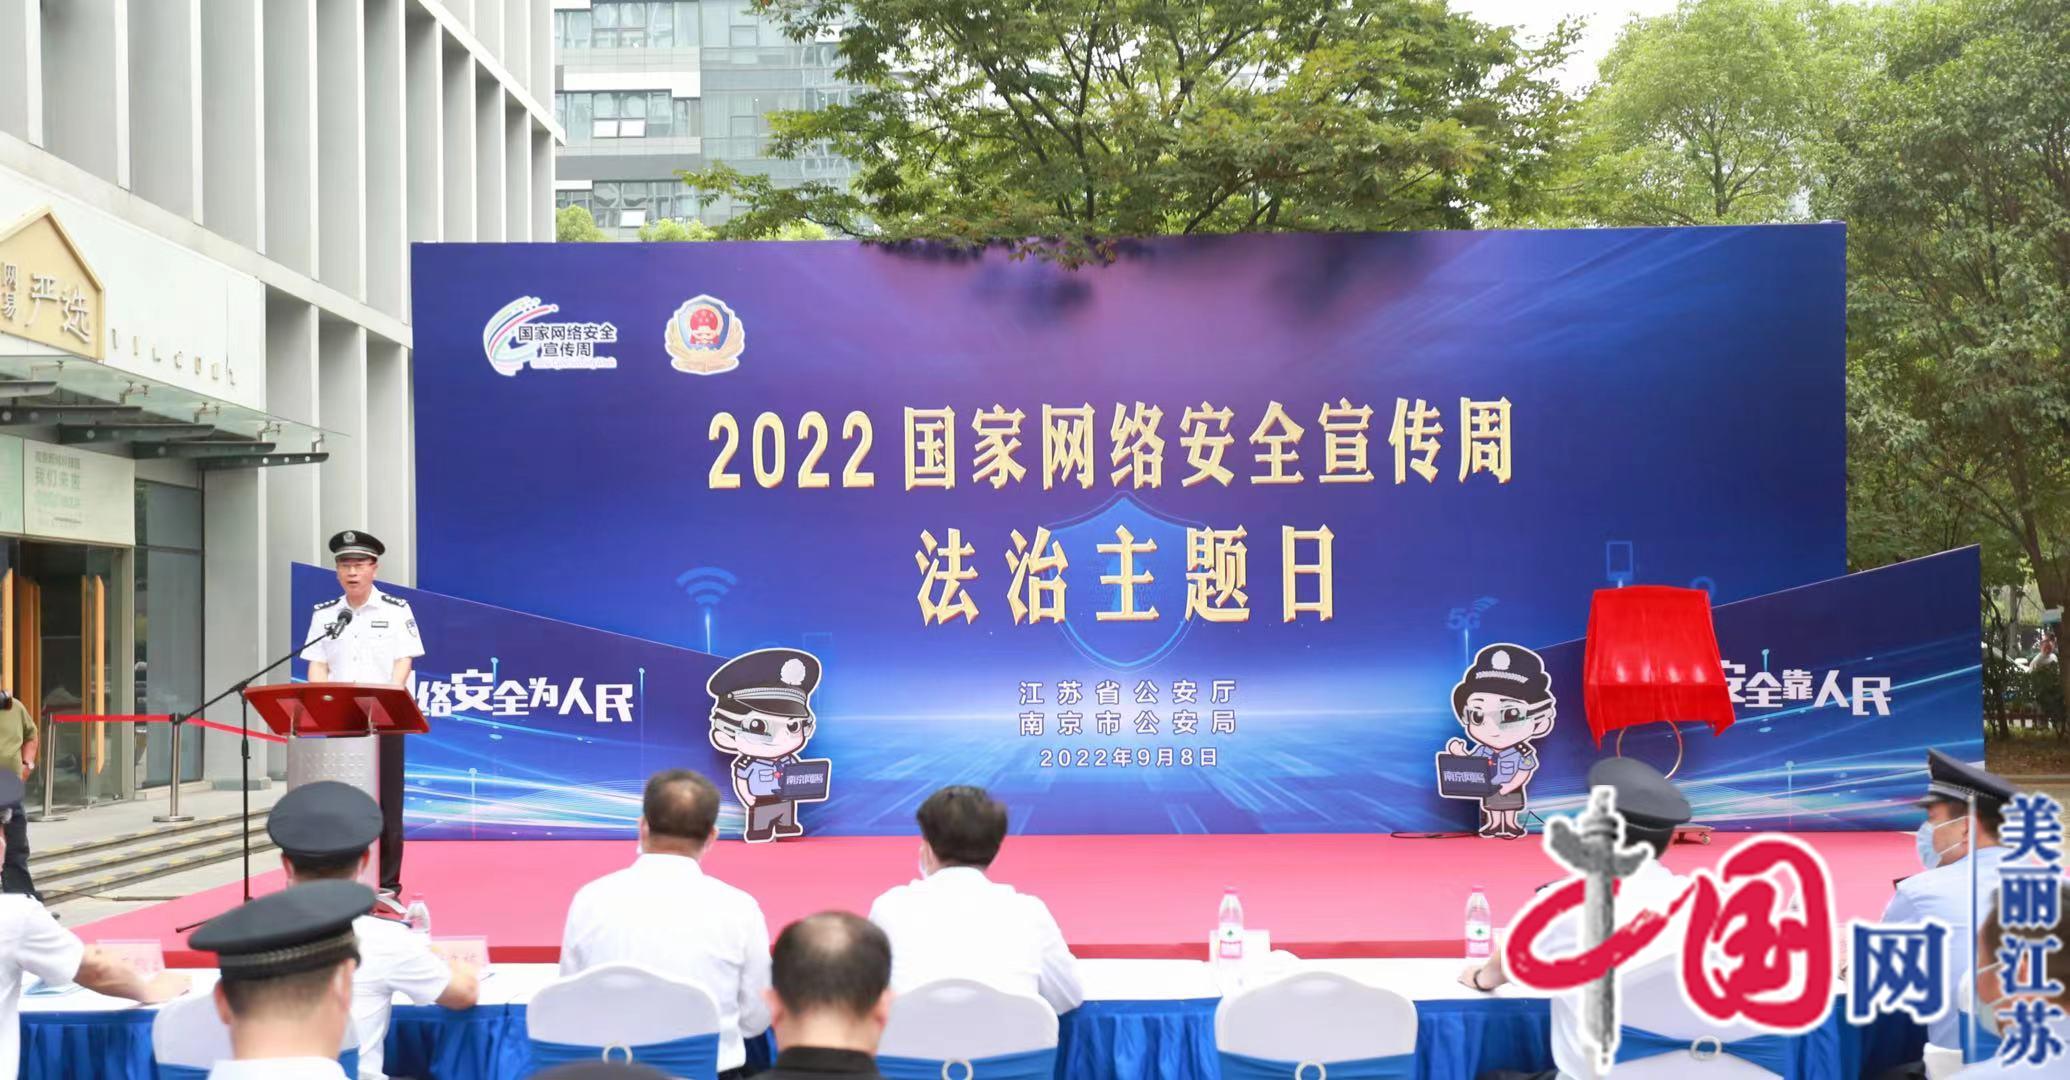 2022年江苏网民网络安全感满意度高达94.97%